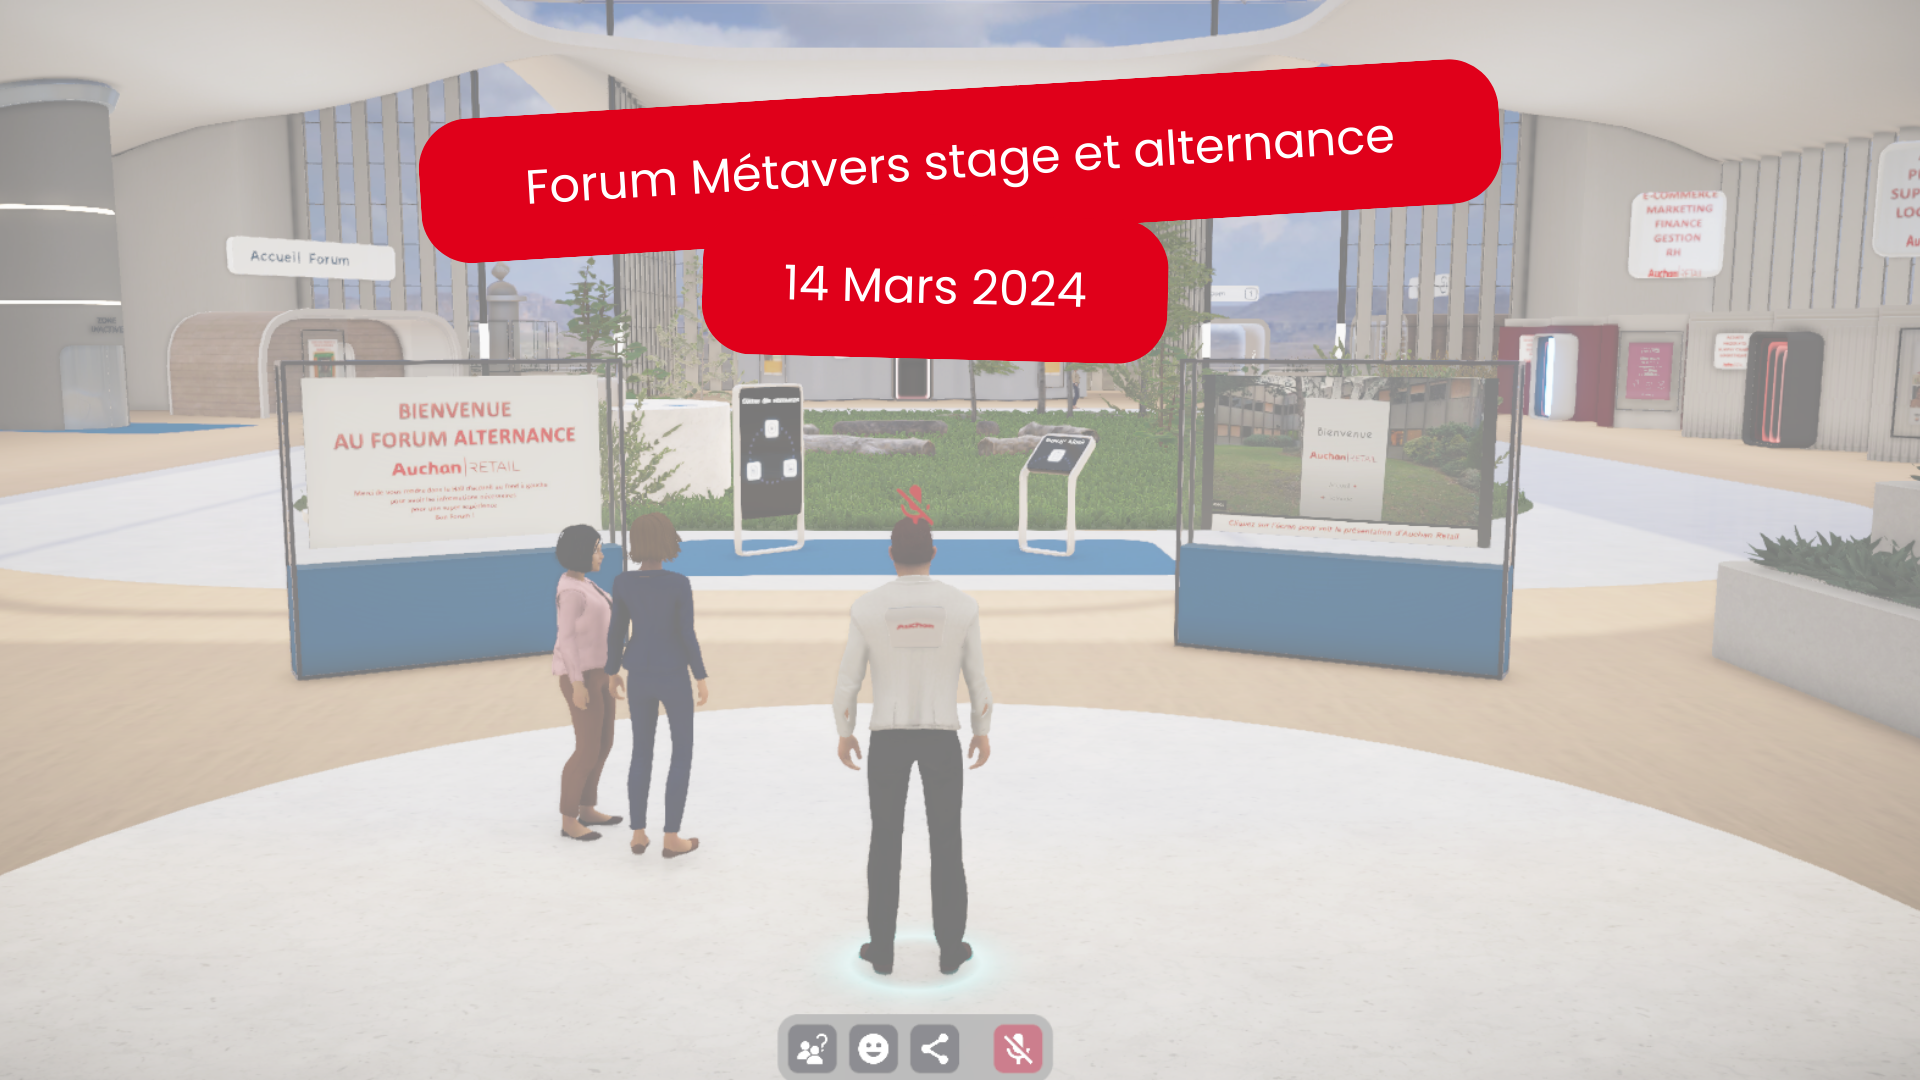 Forum Métavers stage et alternance